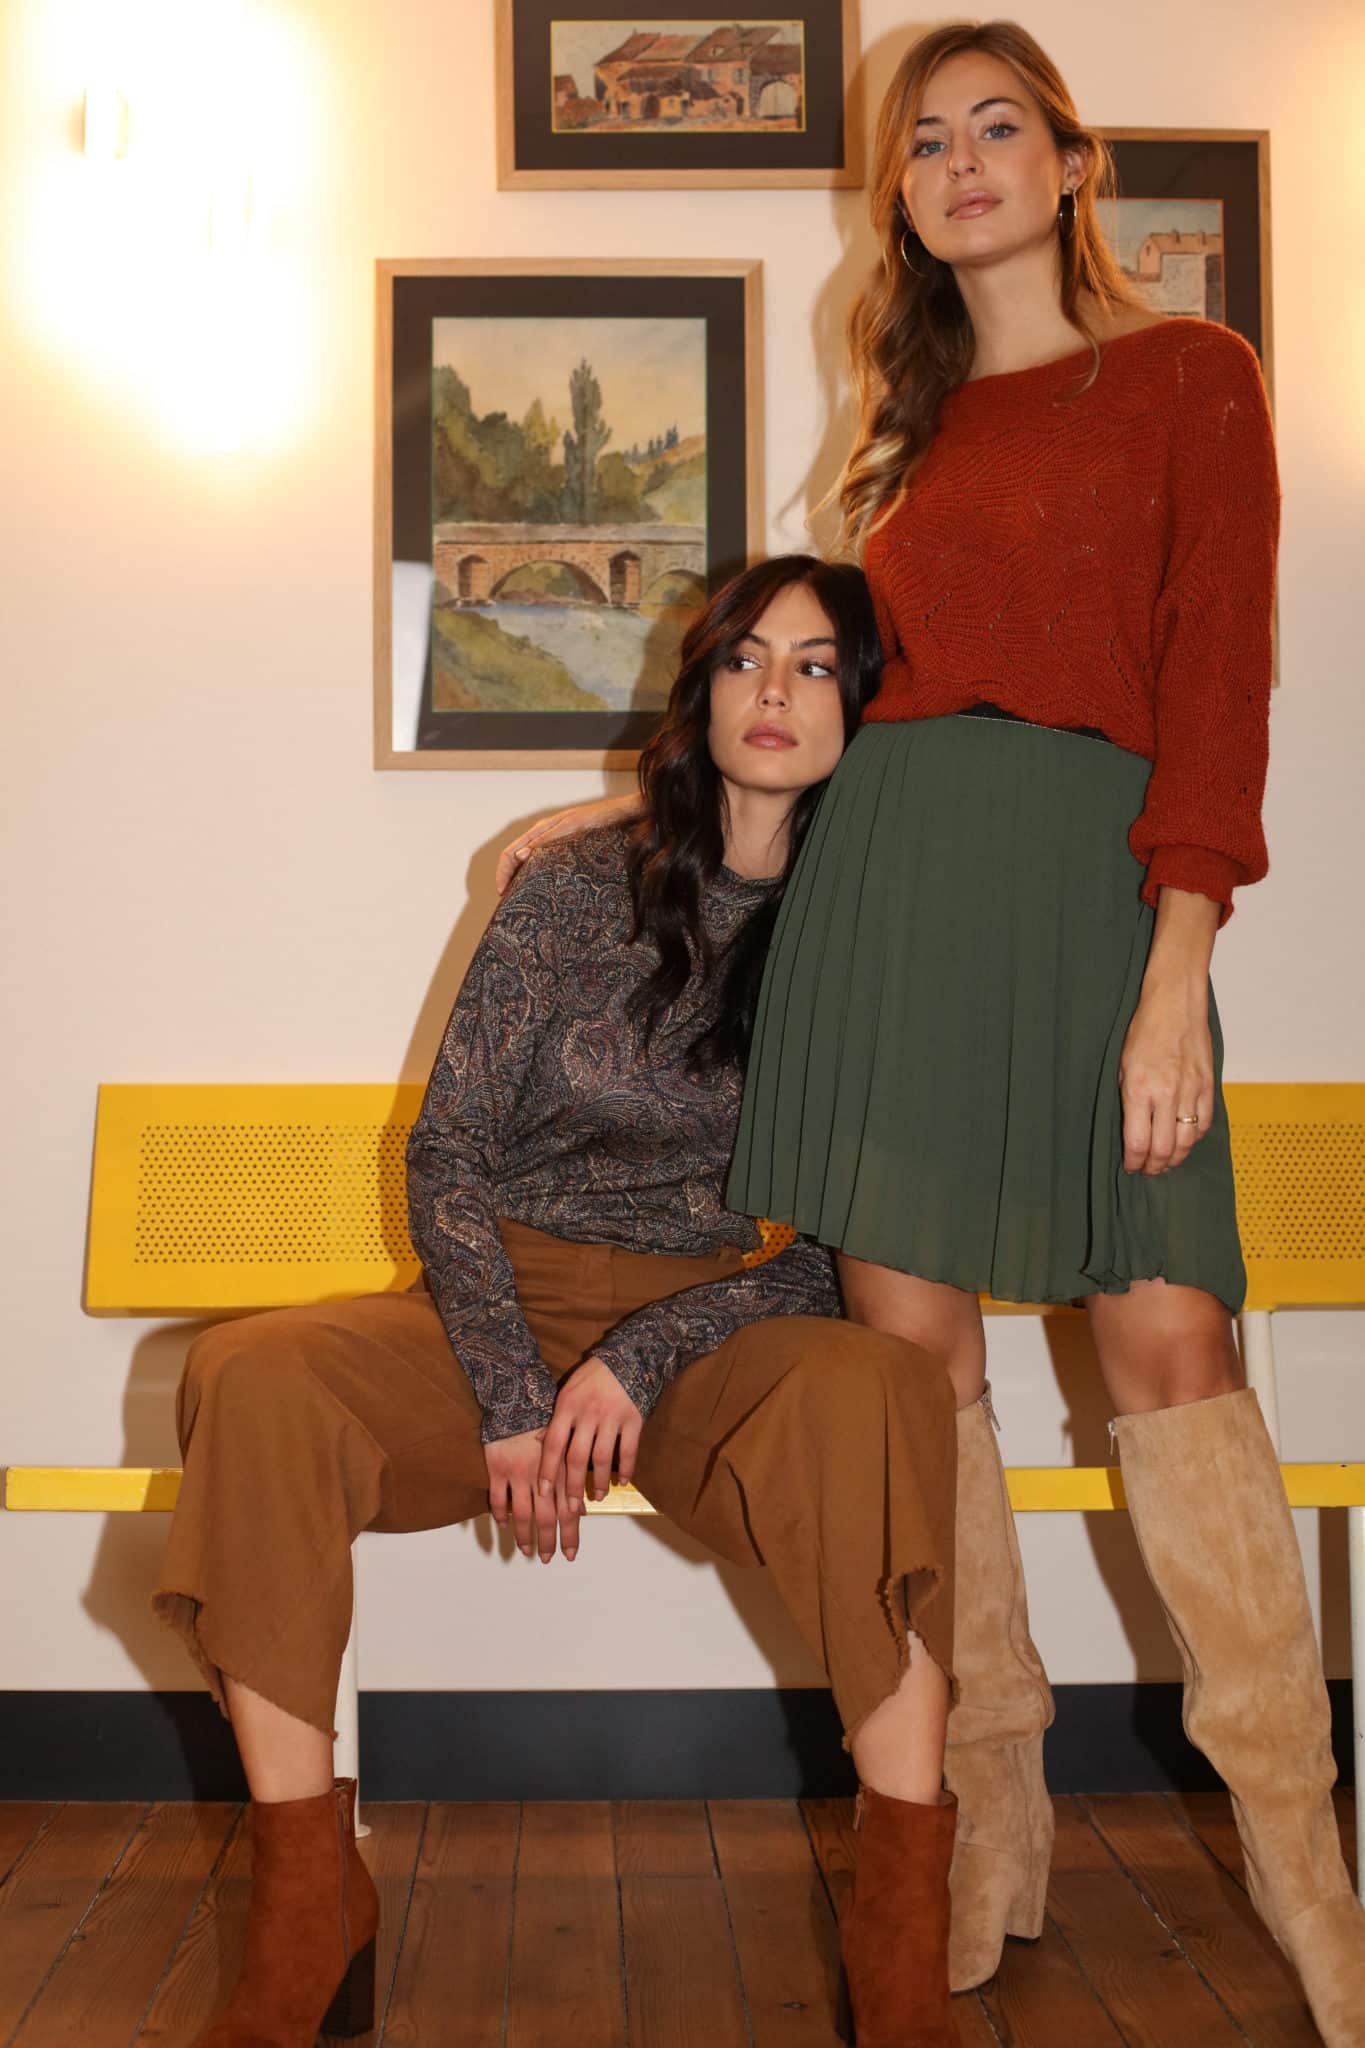 duo de tenue jupe plissé kaki pull en laine orange et pantalon camel top imprimé liberty plein pied